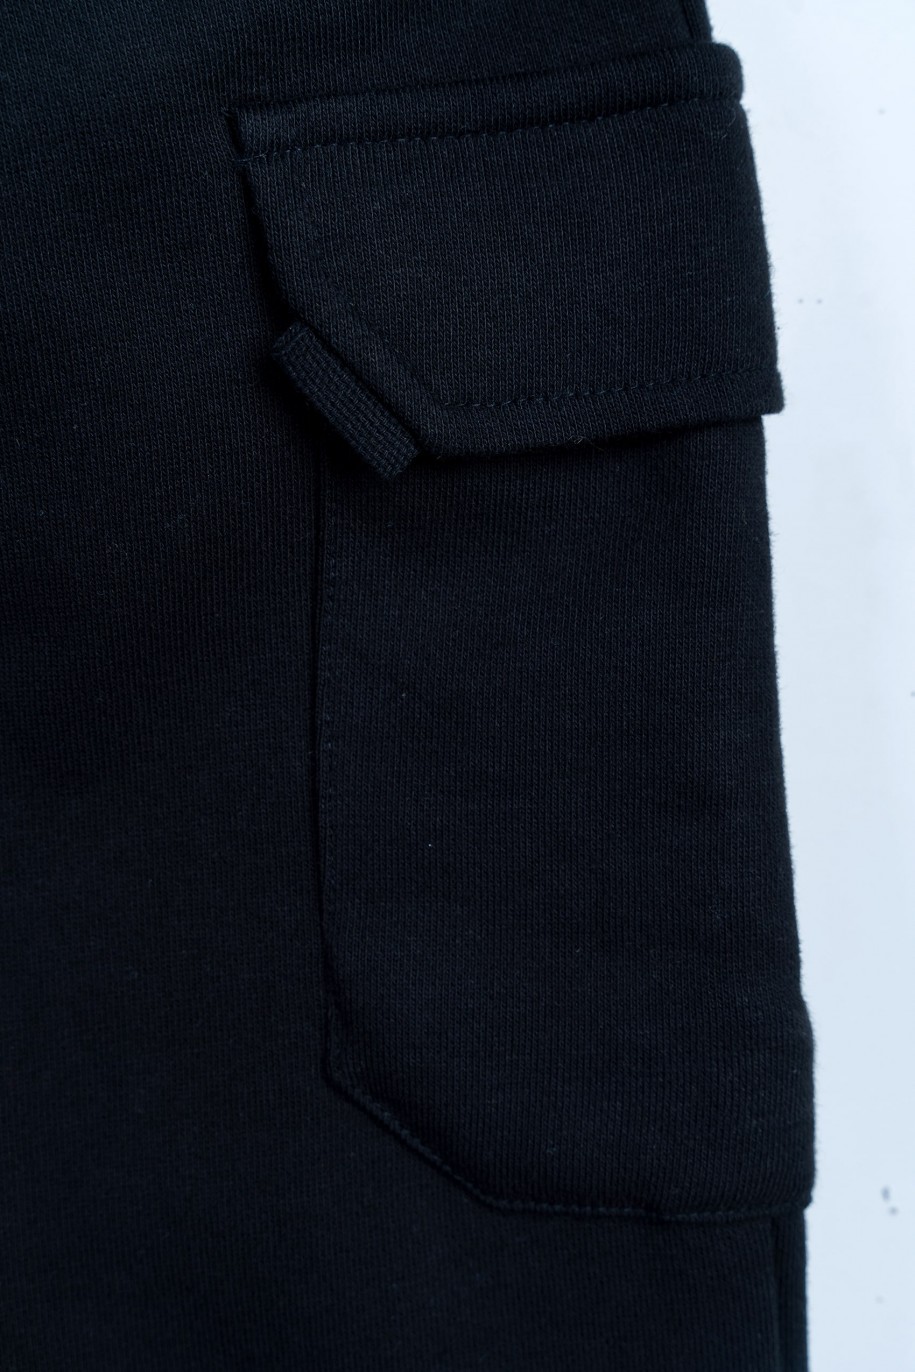 Czarne spodnie dresowe z przestrzennymi kieszeniami na nogawkach - 46983